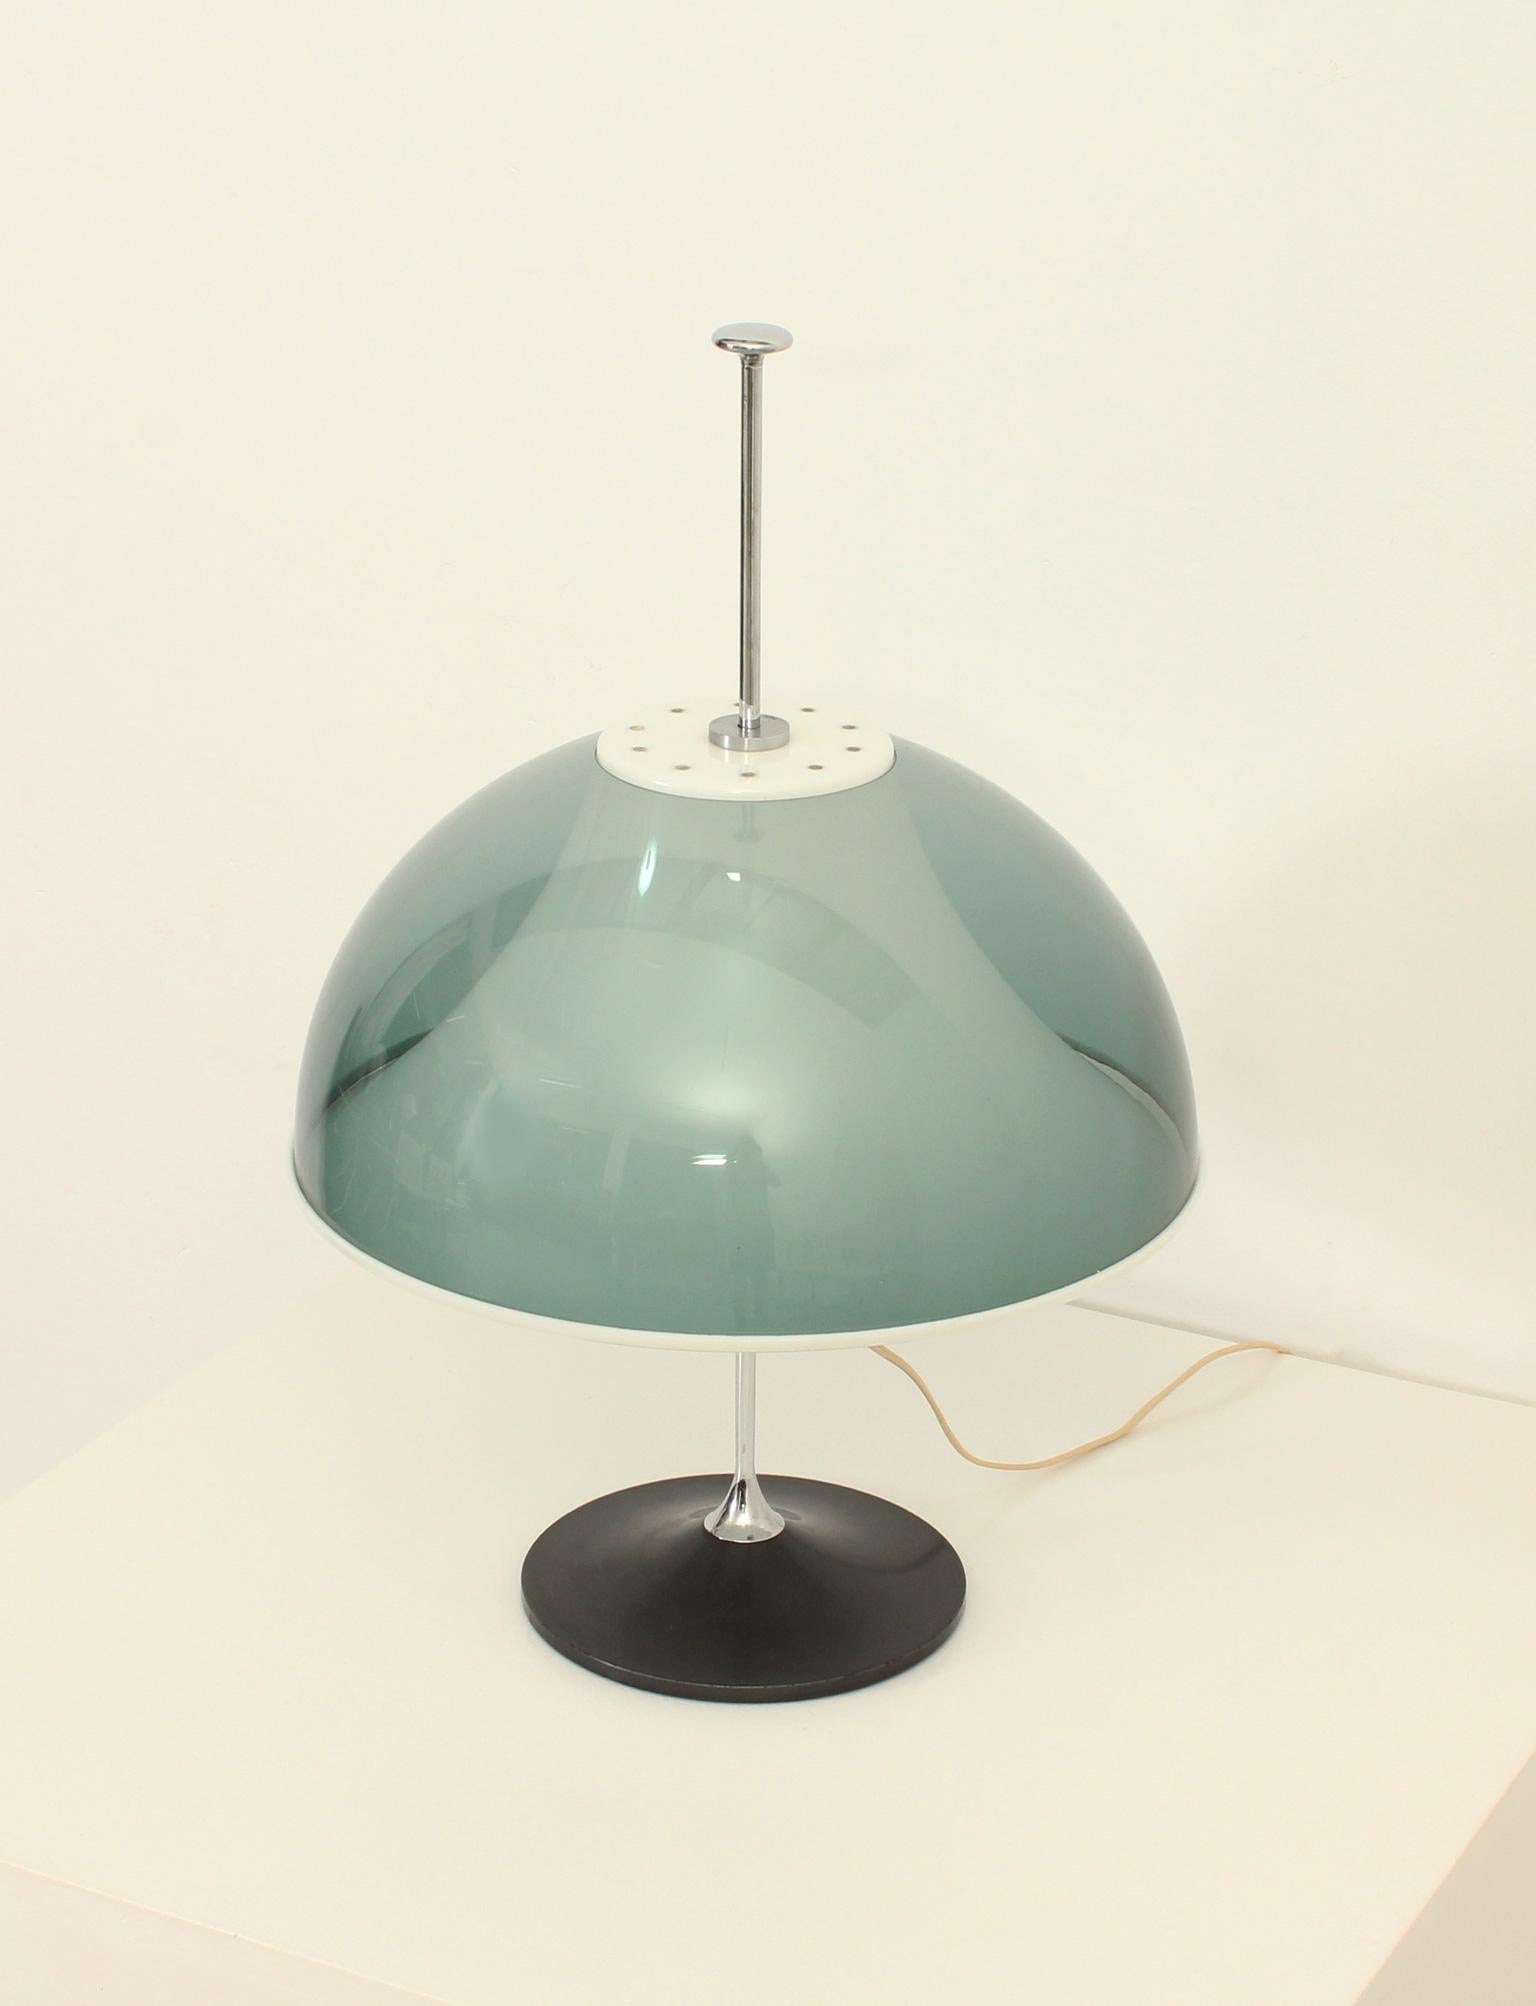 Lampe de table réglable conçue en 1962 par Elios Martinelli pour Metalarte, Espagne. Double abat-jour en plexiglas coloré et acrylique blanc, base en métal laqué et acier chromé avec trois ampoules. La hauteur de l'abat-jour peut être facilement